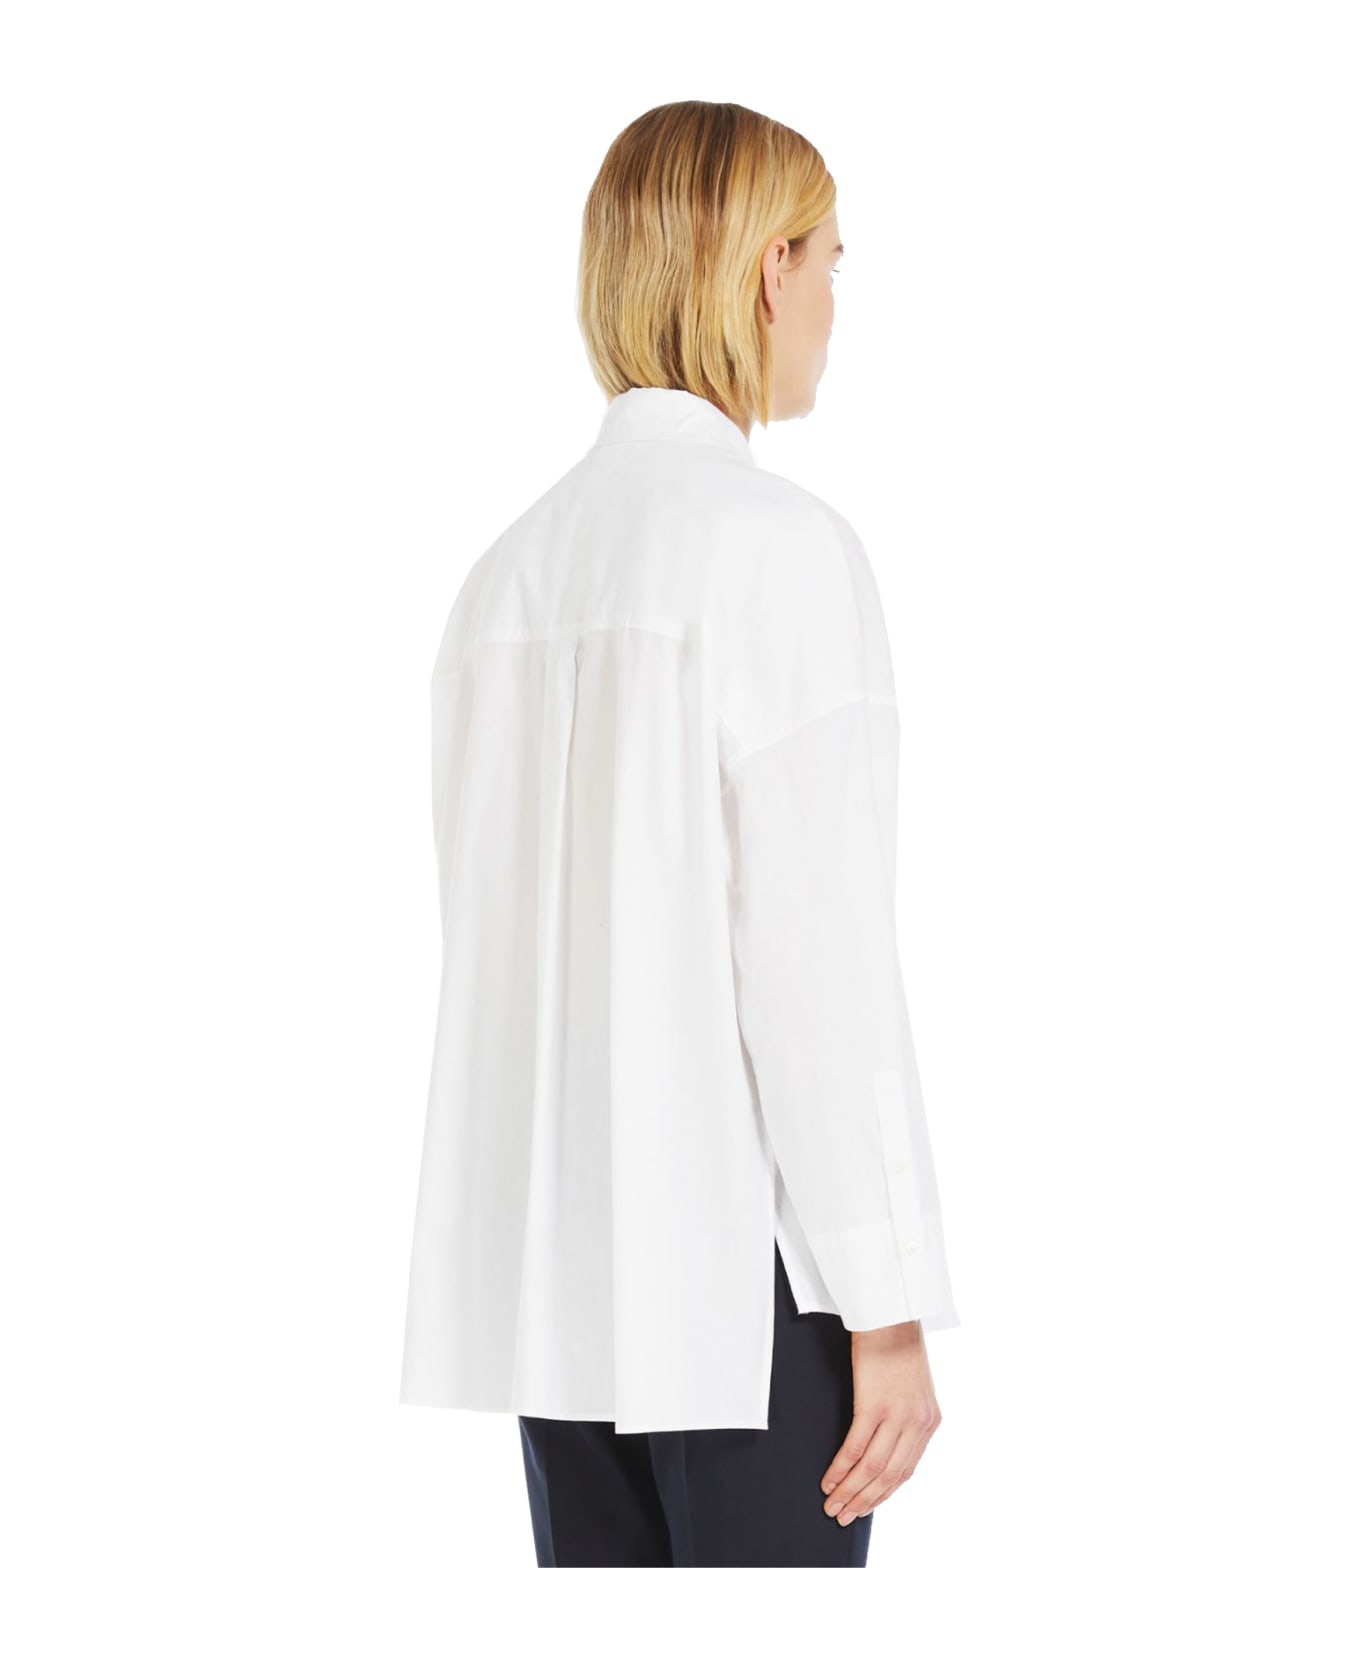 'S Max Mara Lodola Shirt - White シャツ